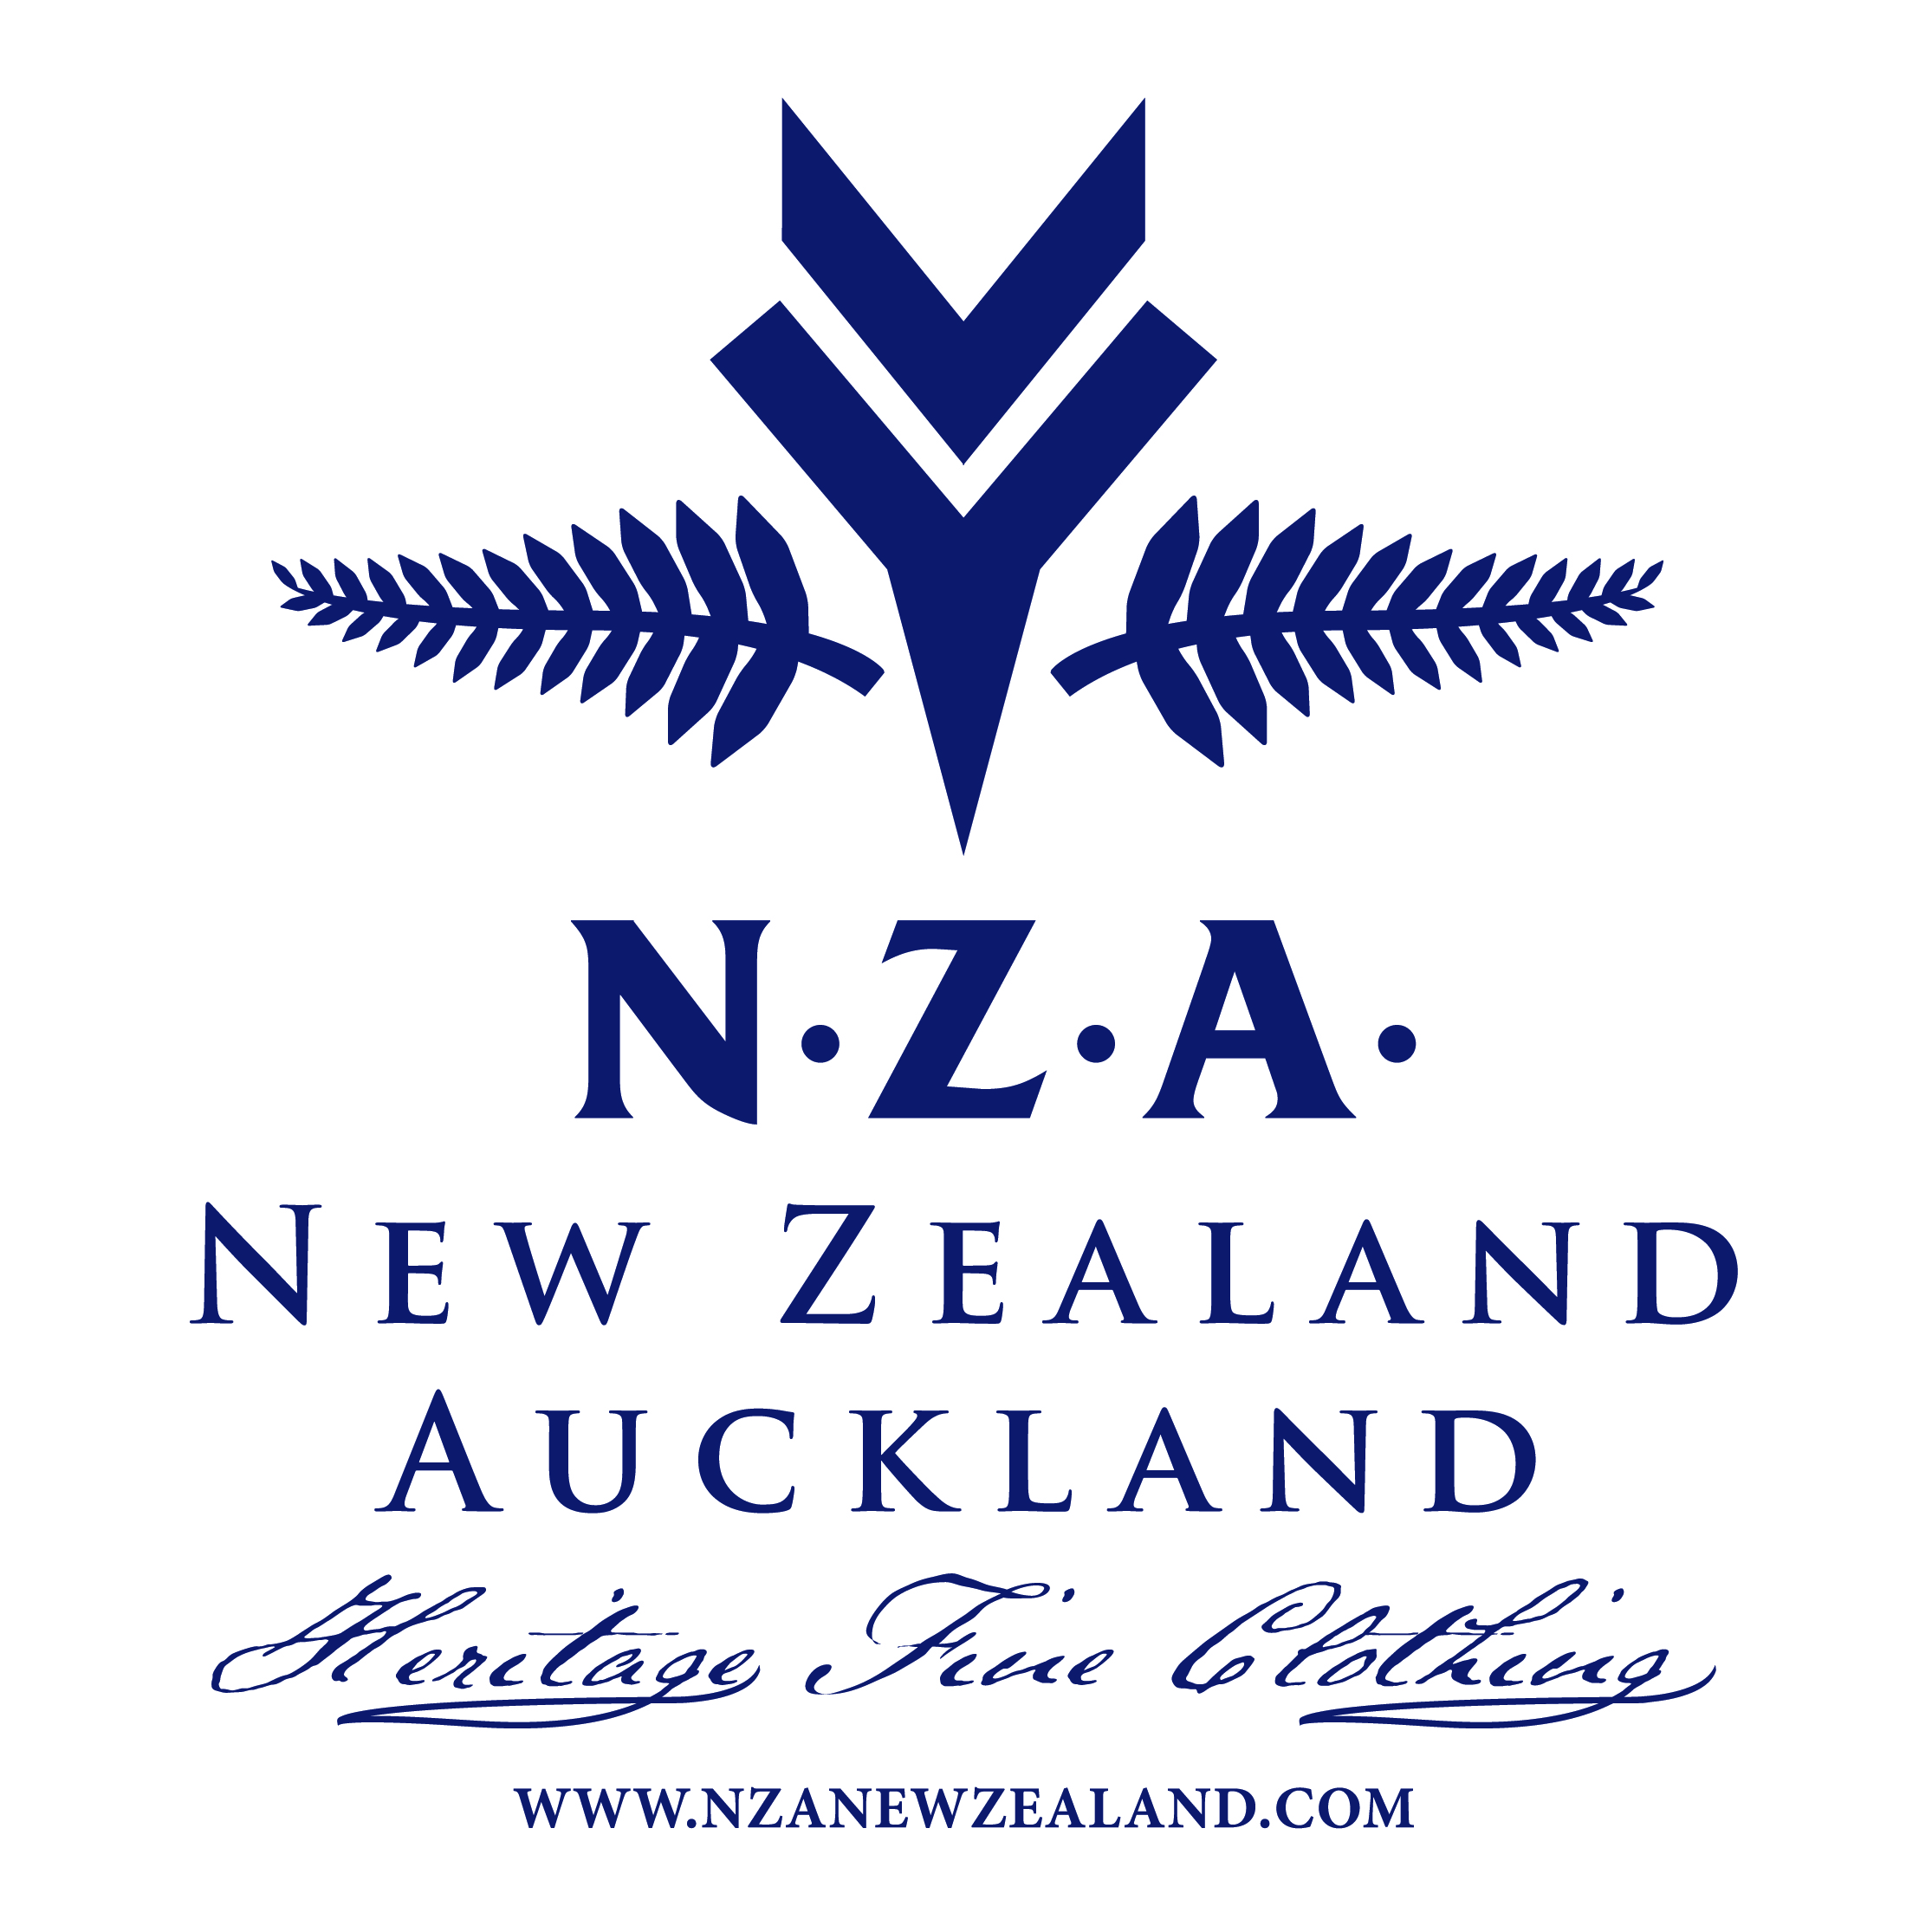 NZA-logo-01.jpg